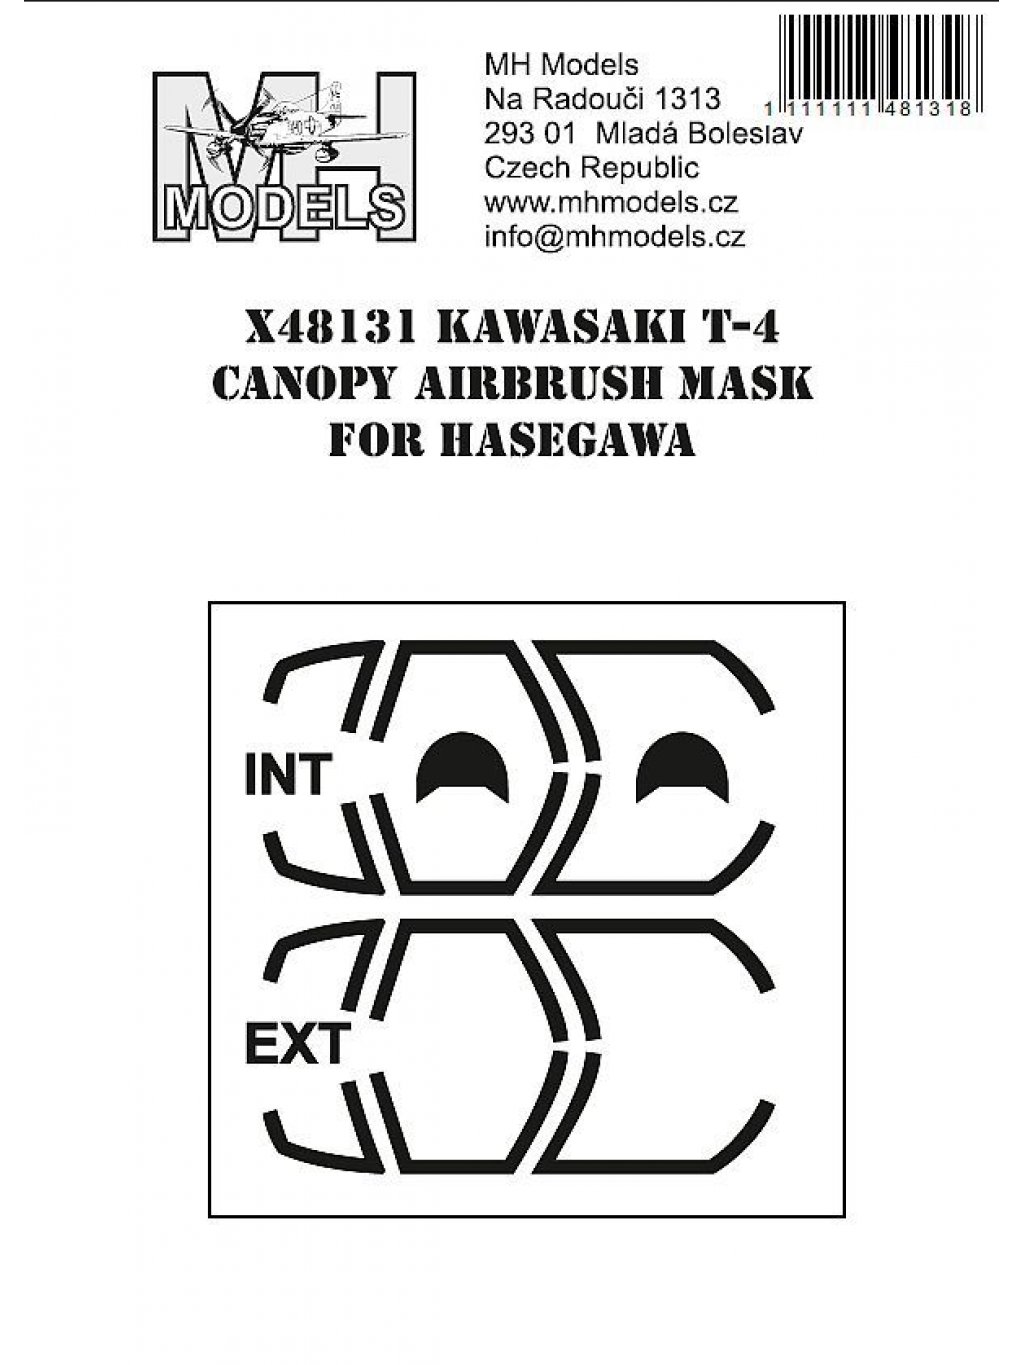 Kawasaki T-4 canopy airbrush mask for Hasegawa